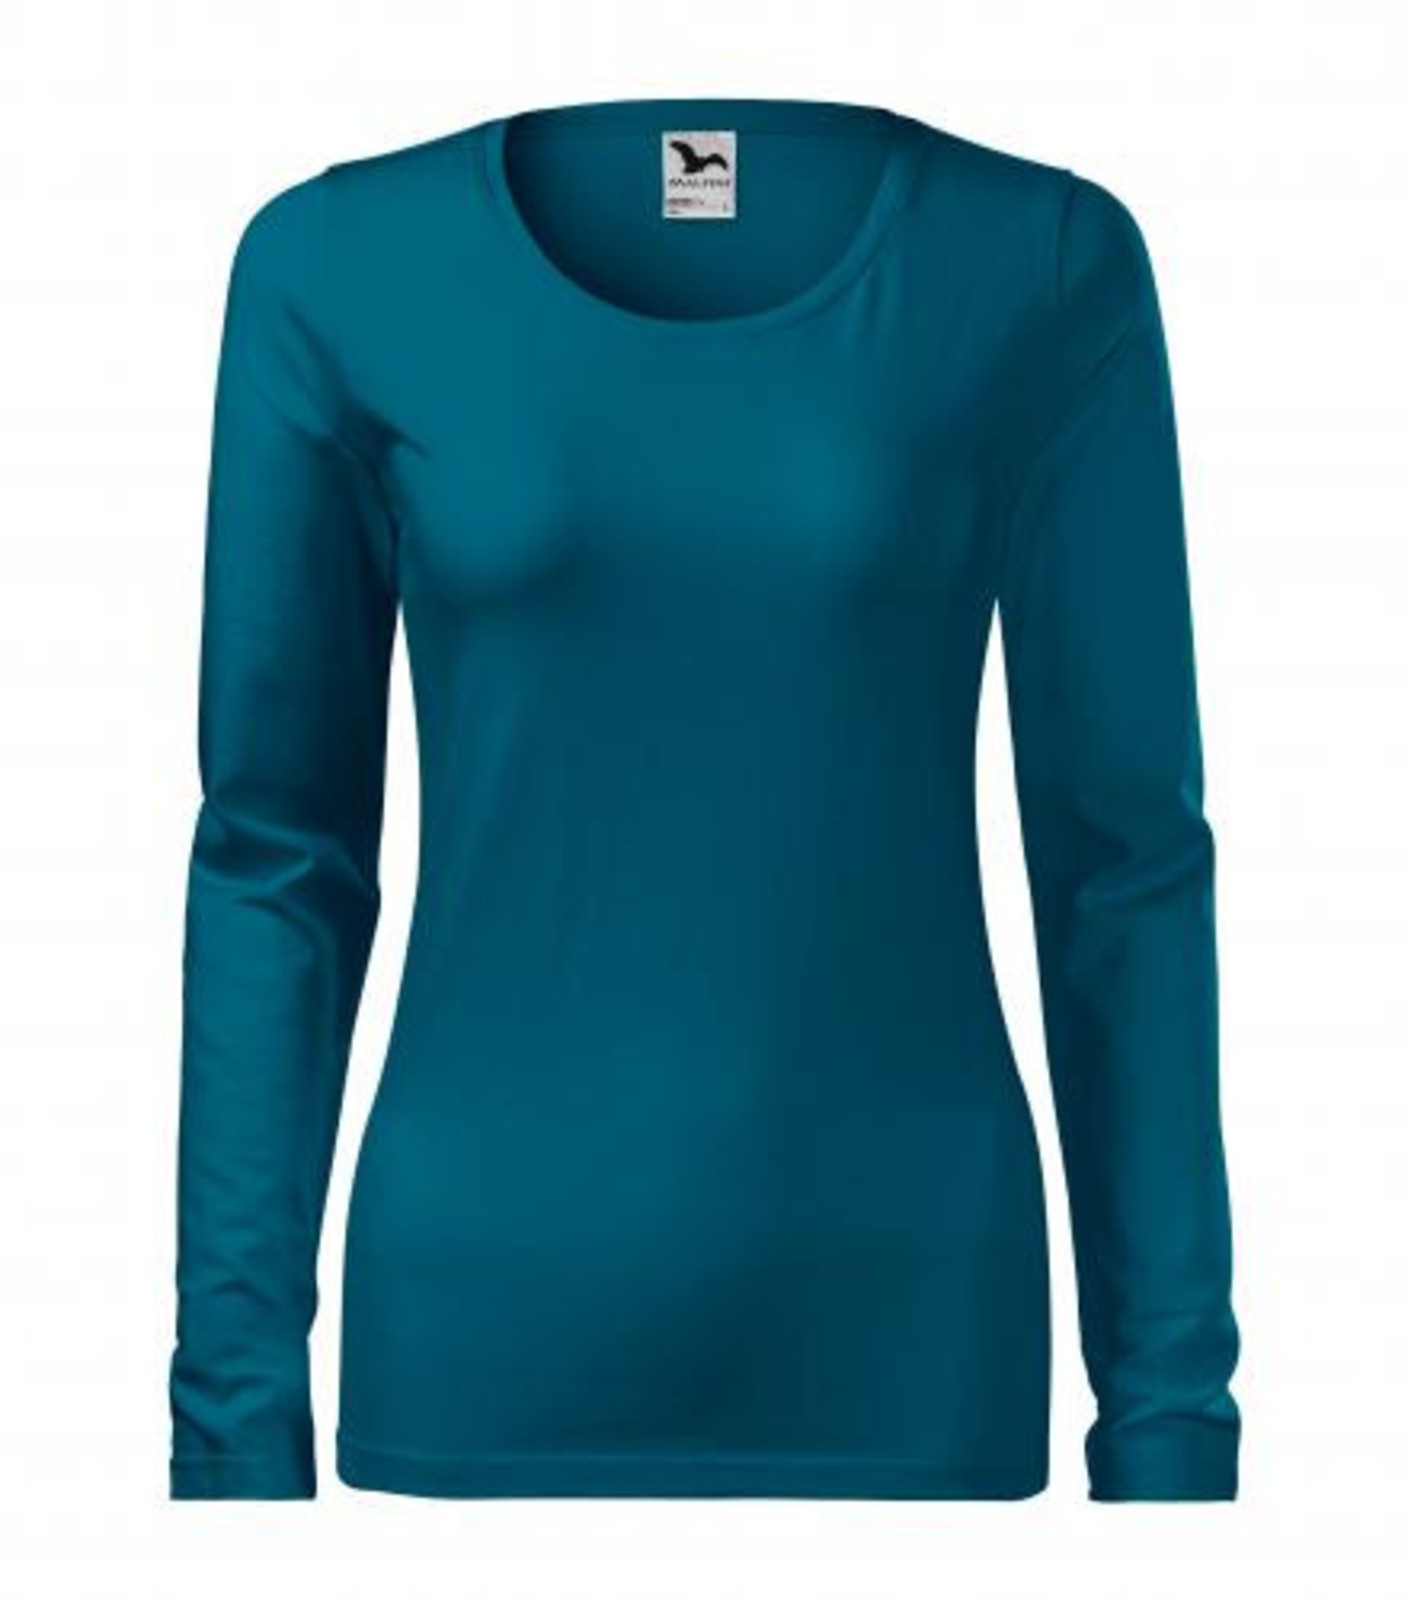 Dámske tričko s dlhým rukávom Adler Slim 139 - veľkosť: XXL, farba: petrolejová modrá